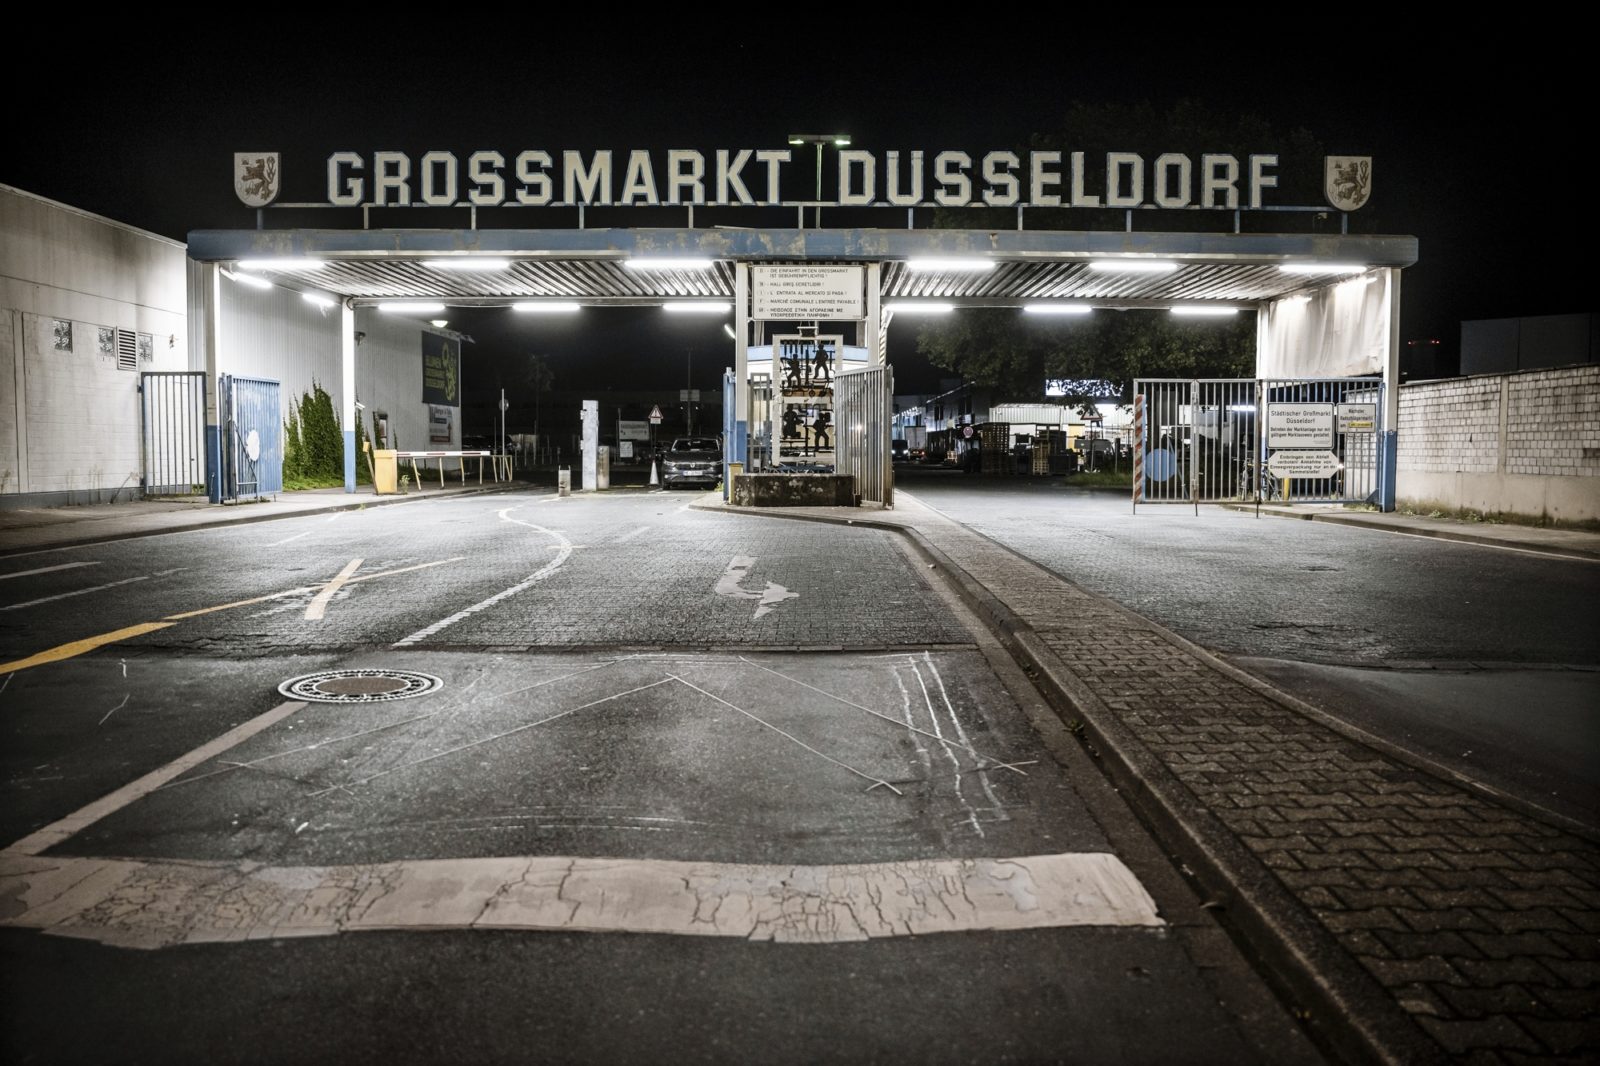 Grossmarkt Duesseldorf